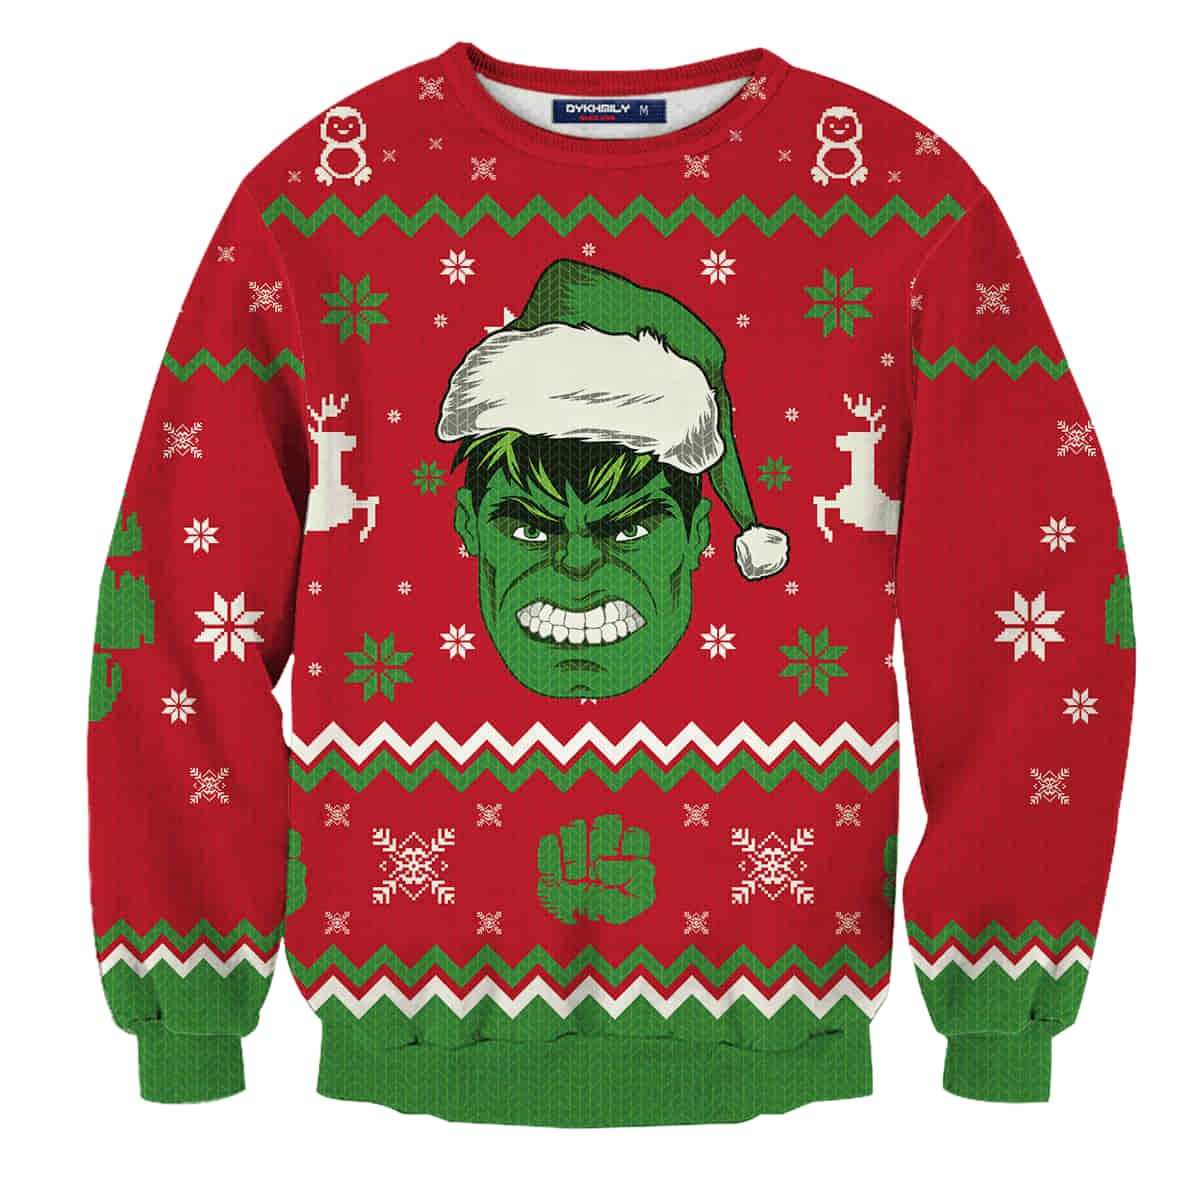 Hulk Smashin’ Wool Knitted Sweater, Christmas 3D Sweater